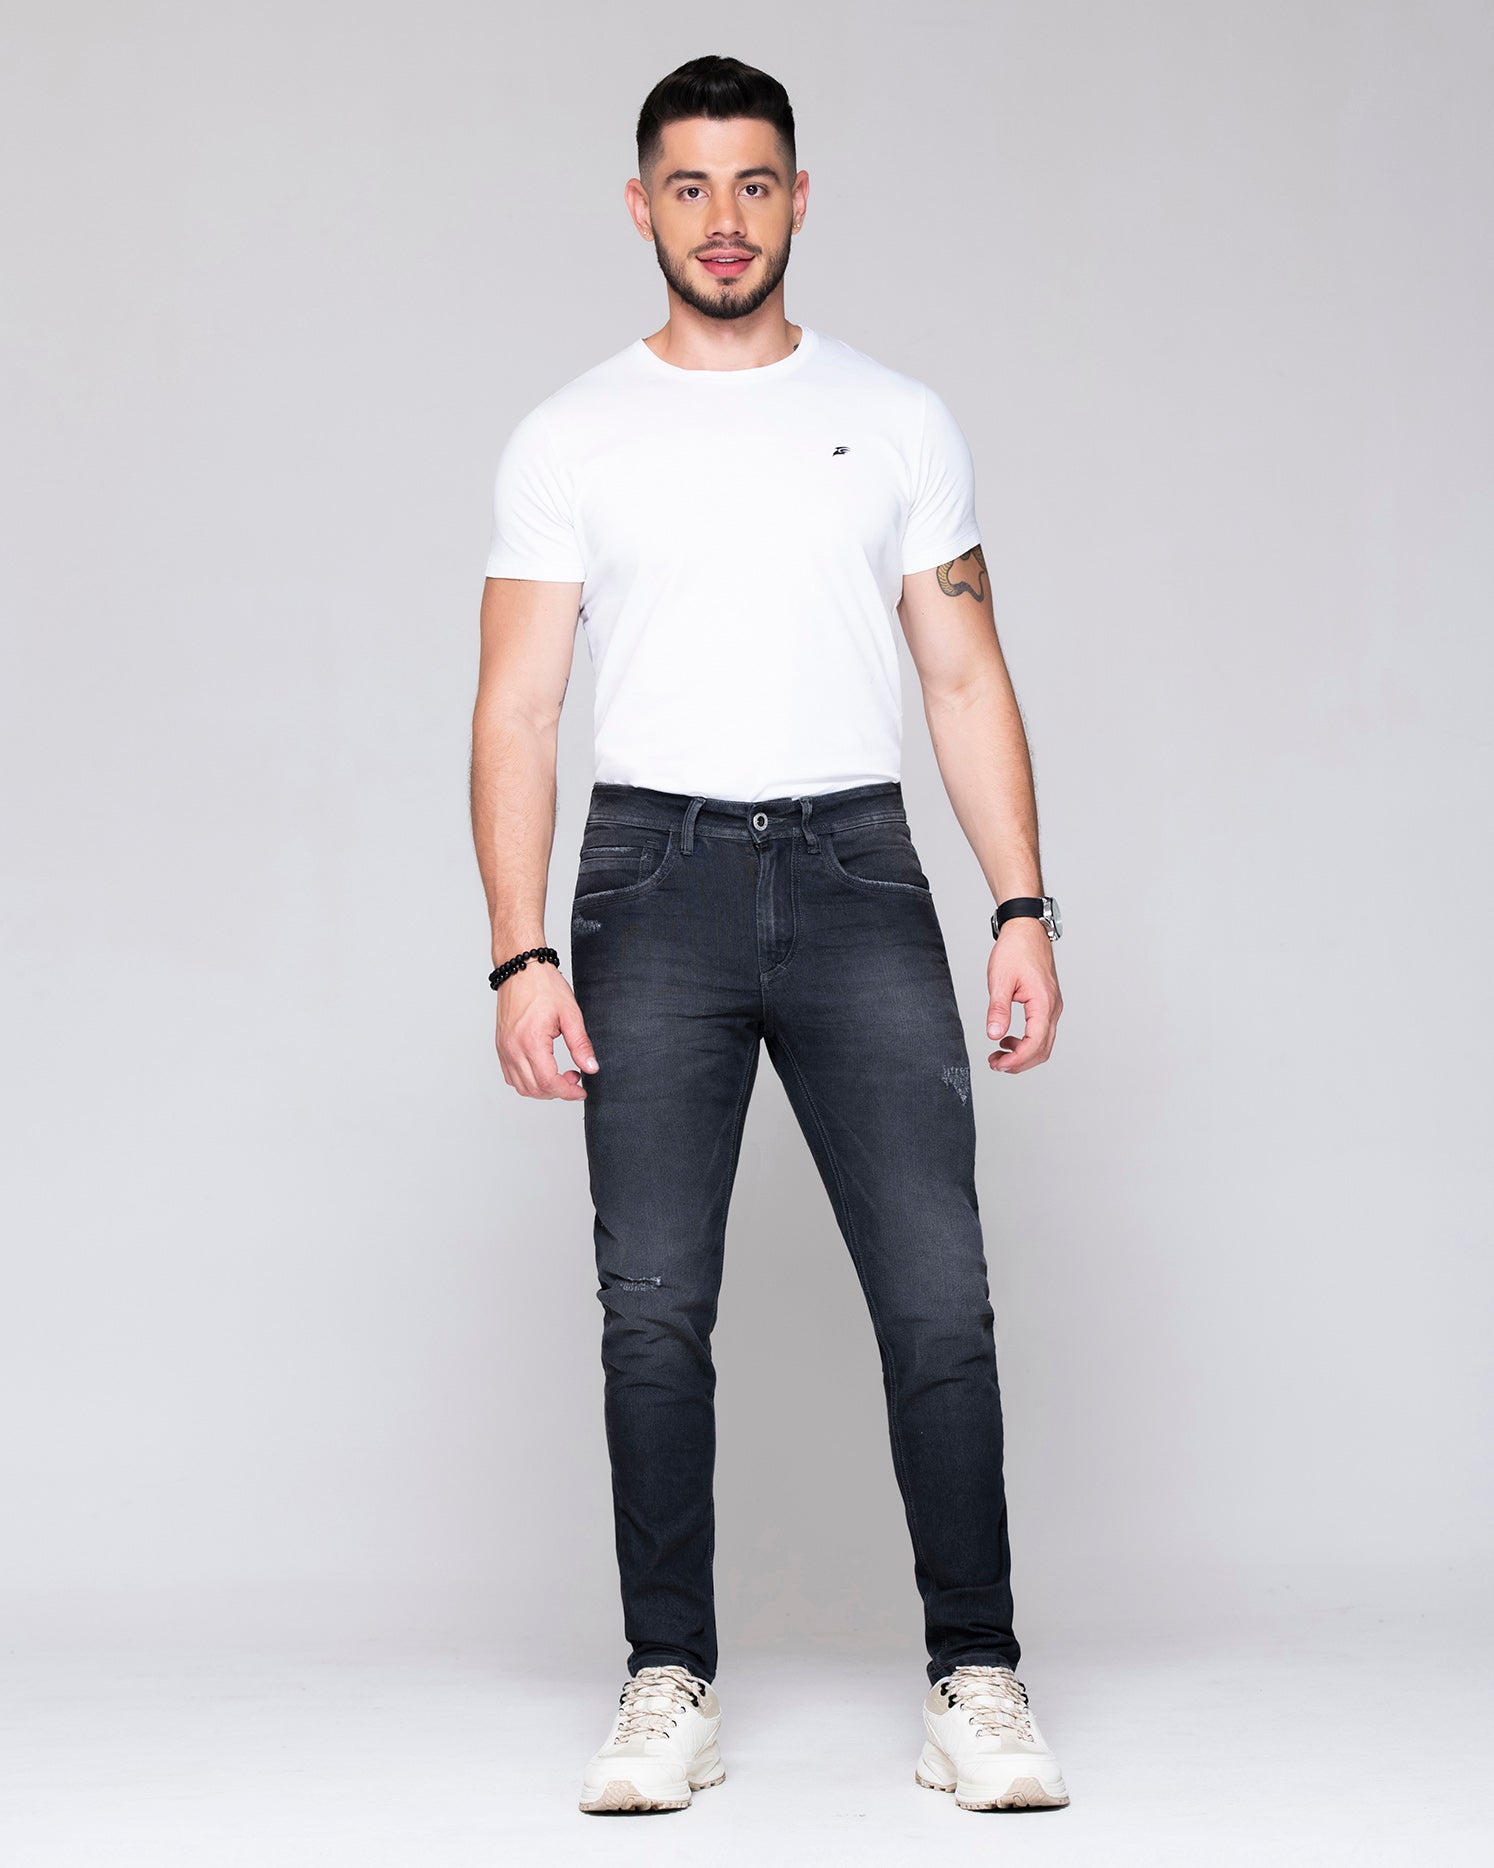 Jean skinny color gris oscuro. Confeccionado en Algodón, Poliester y Elastano, jean con desgaste, bolsillos laterales y posteriores funcionales.